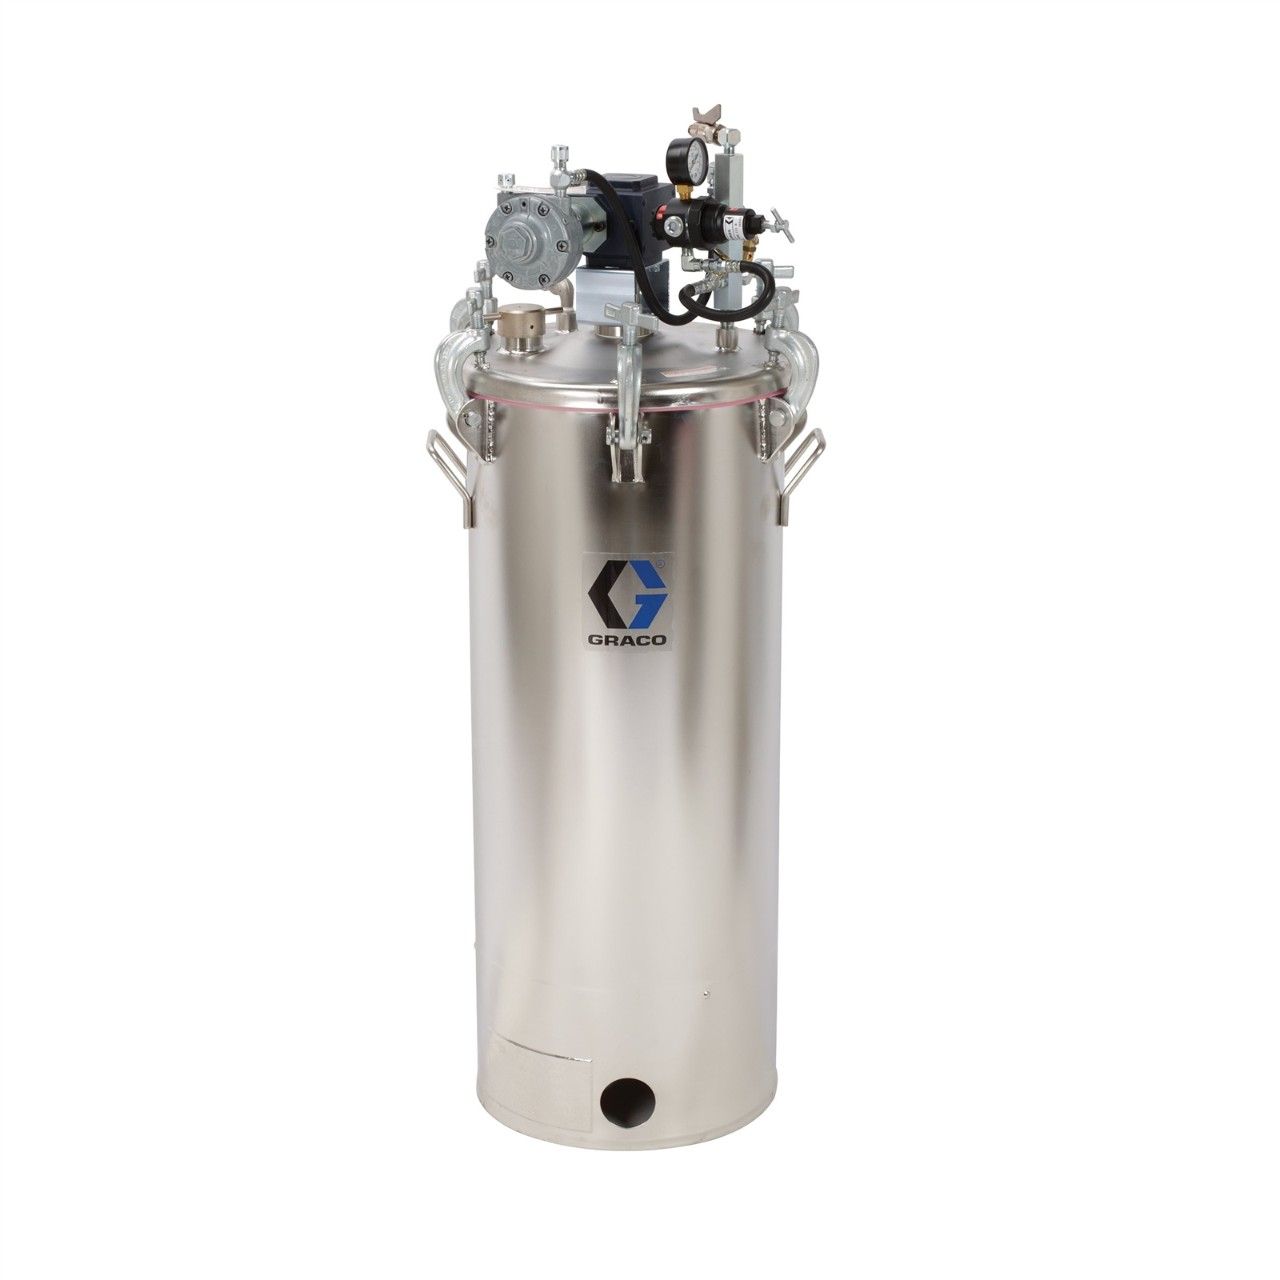 GRACO 15-Gallonen-Druckbehälter (HVLP), Behälter mit Rührwerk - 236154